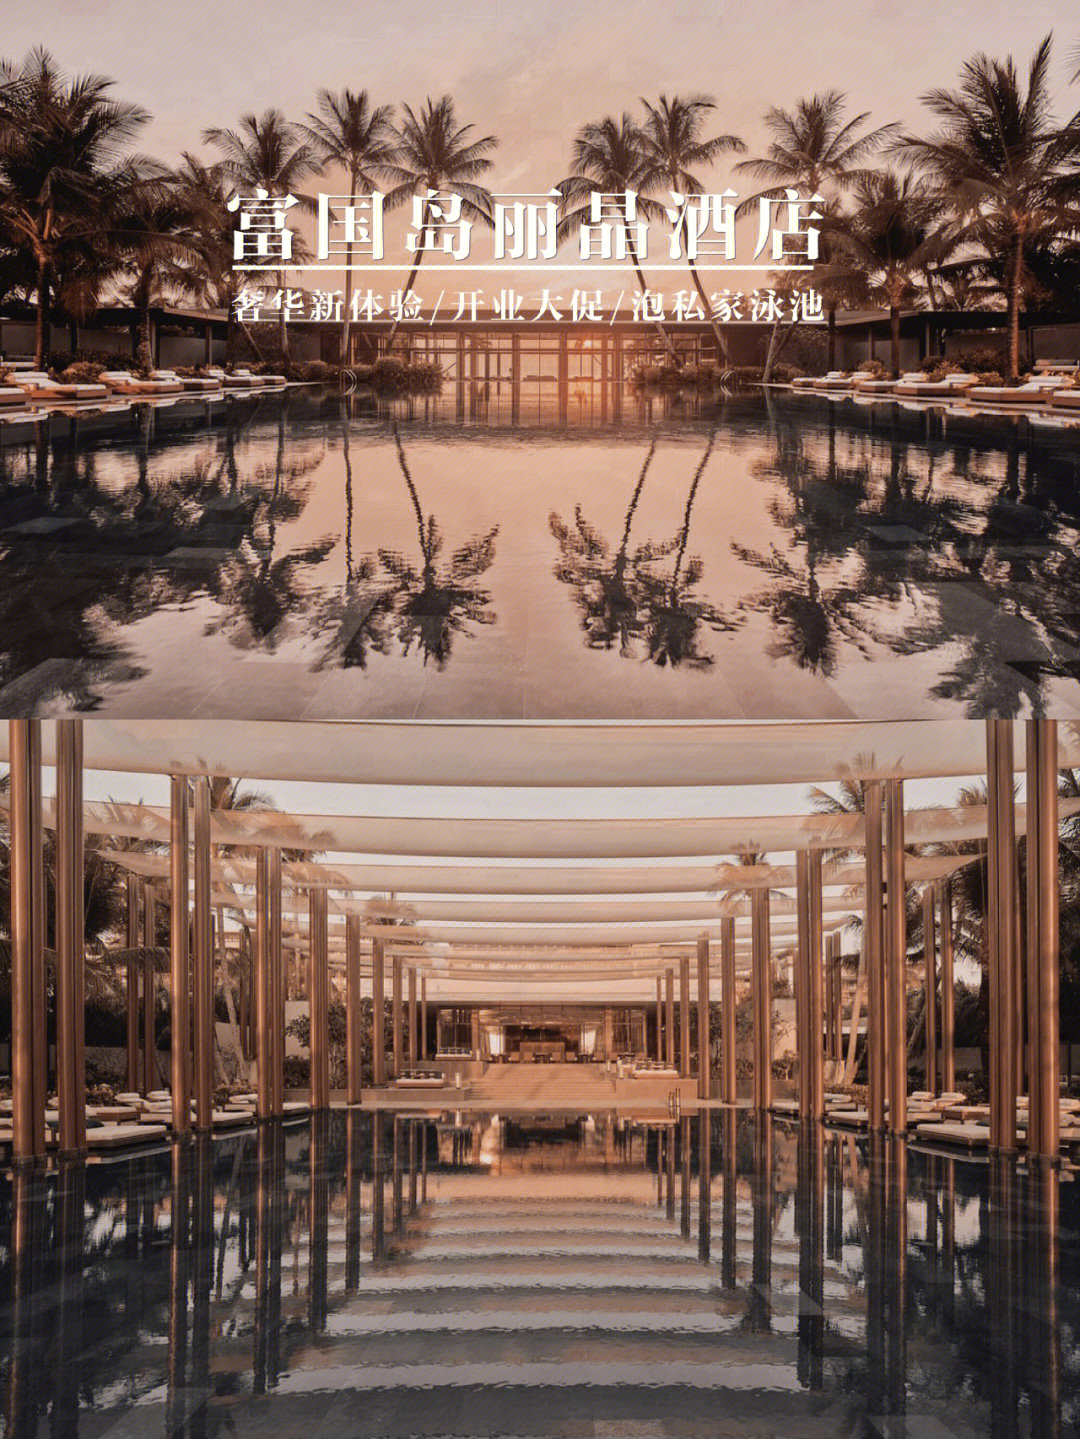 奢华新体验越南富国岛丽晶酒店全新开业